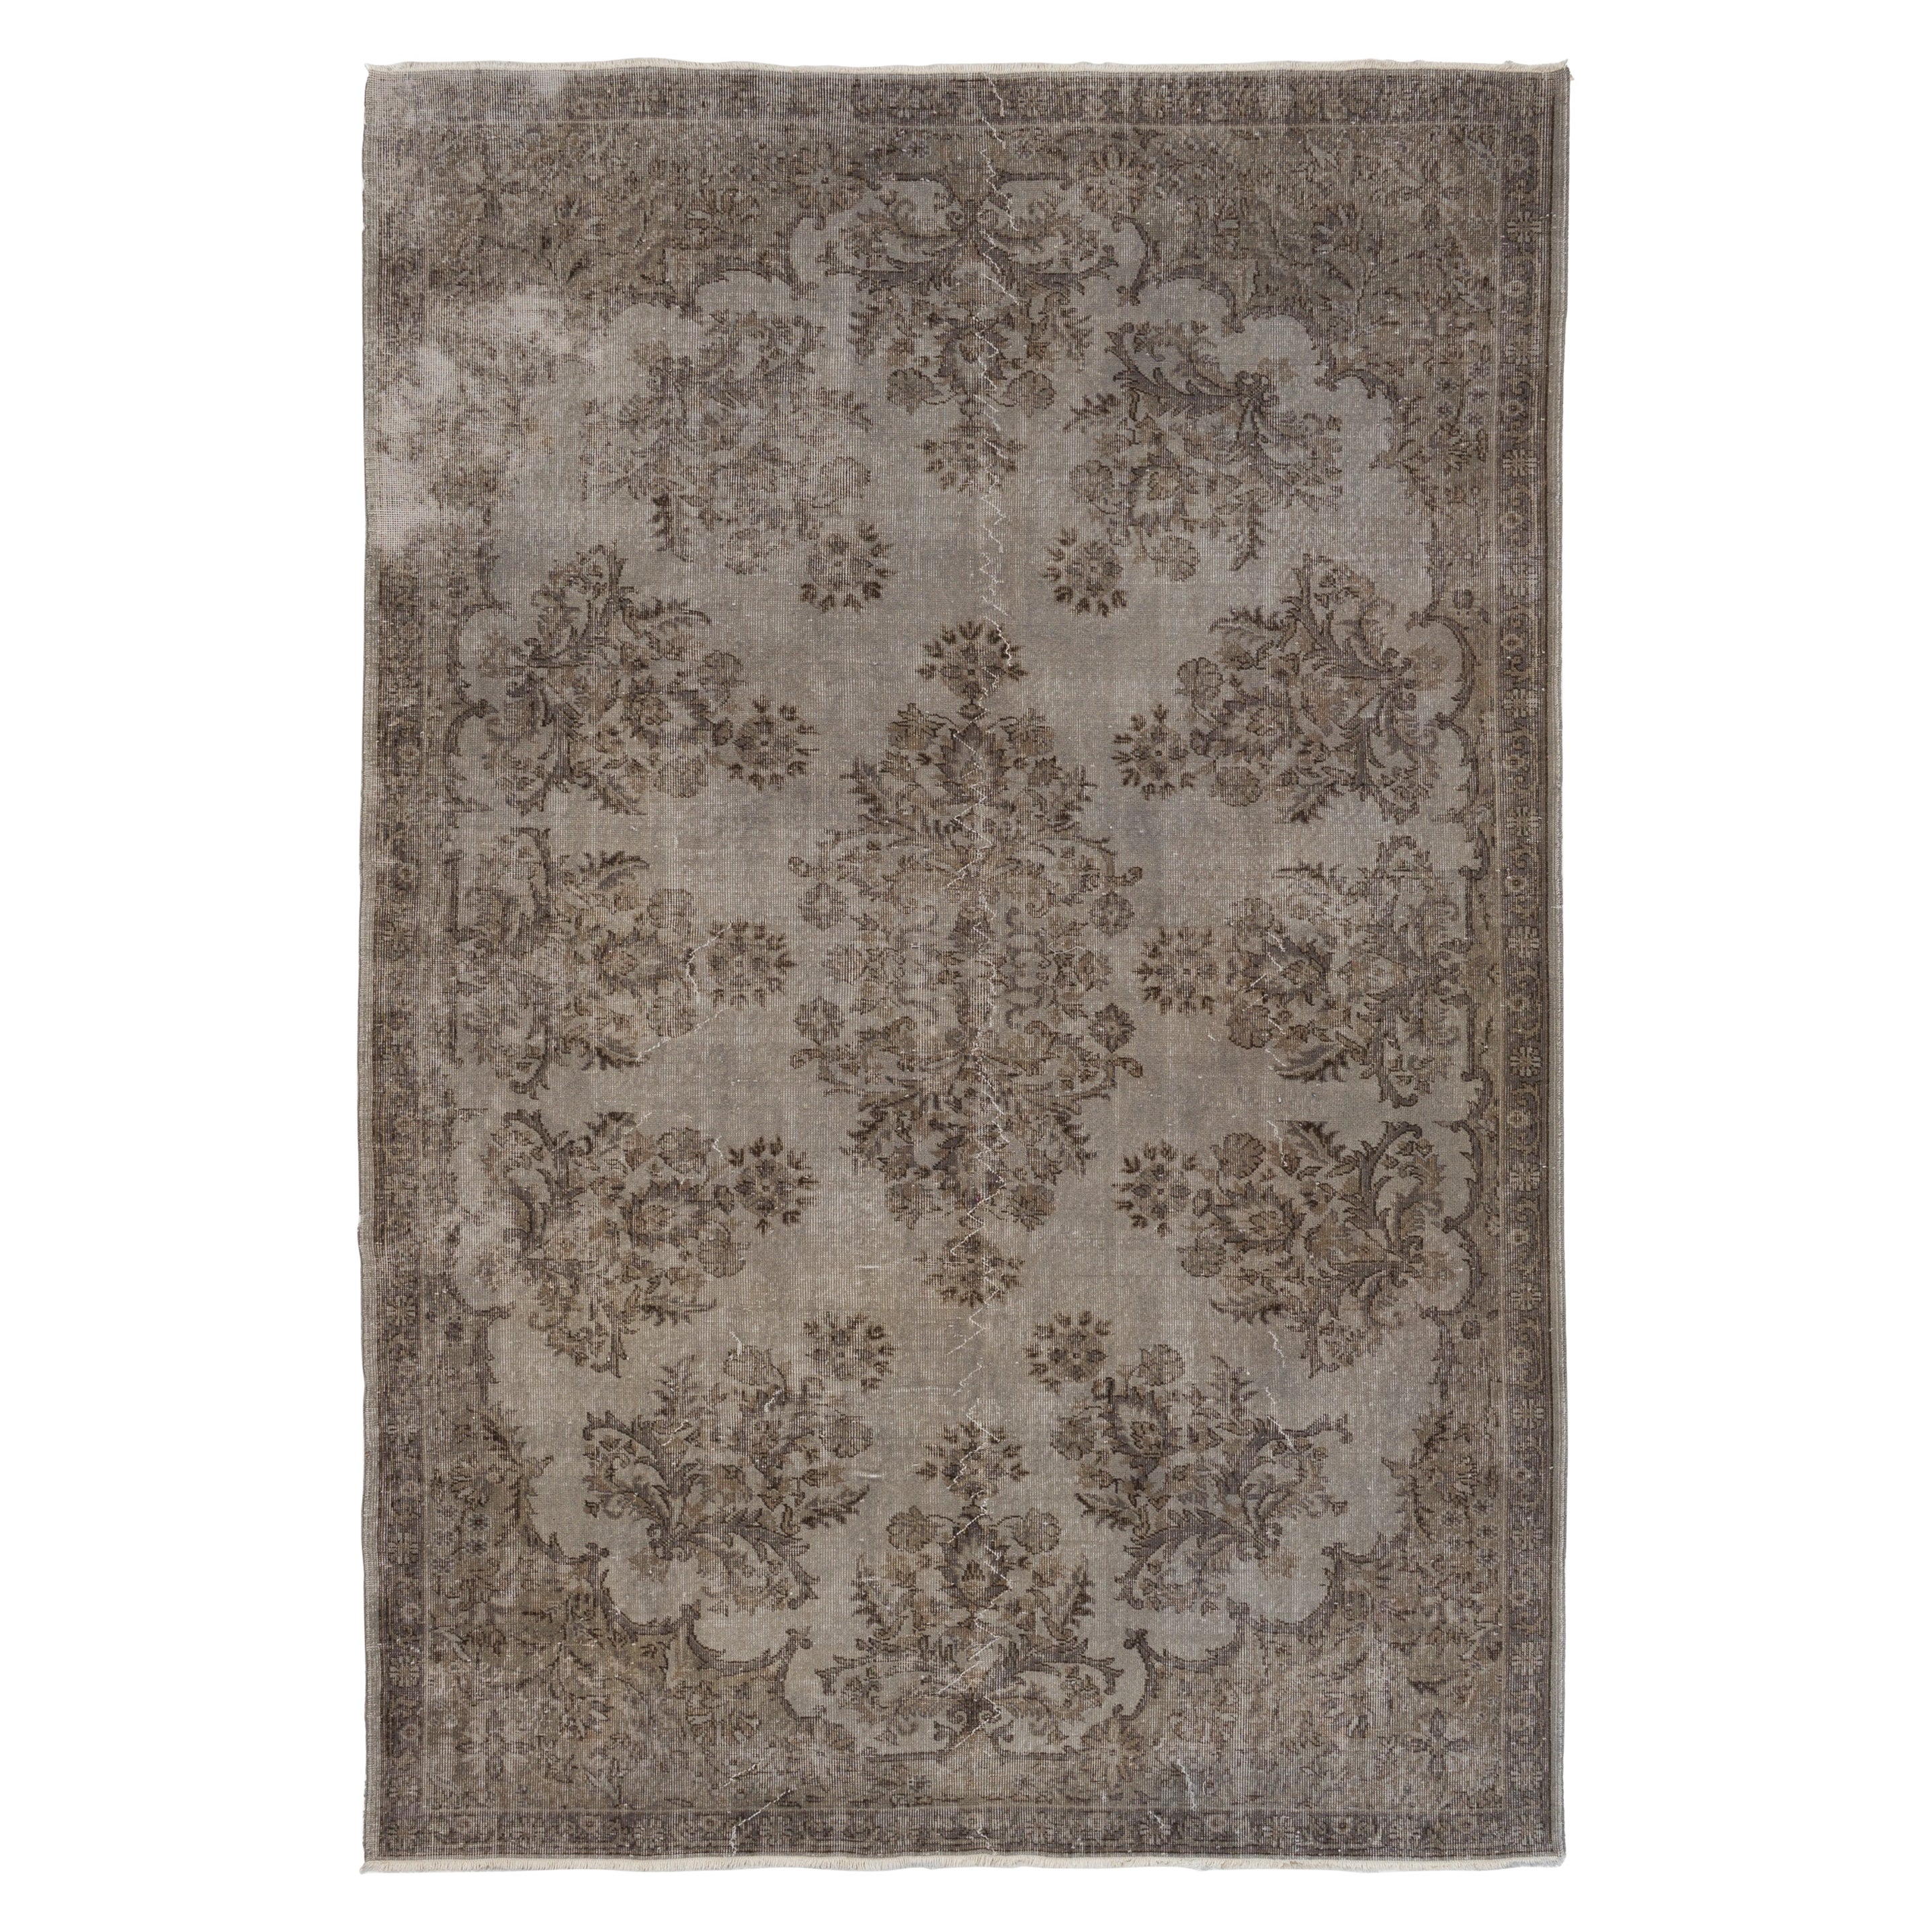 7.2x10.5 Ft Handmade Floral Garden Design Large Rug. Gray Vintage  Carpet For Sale